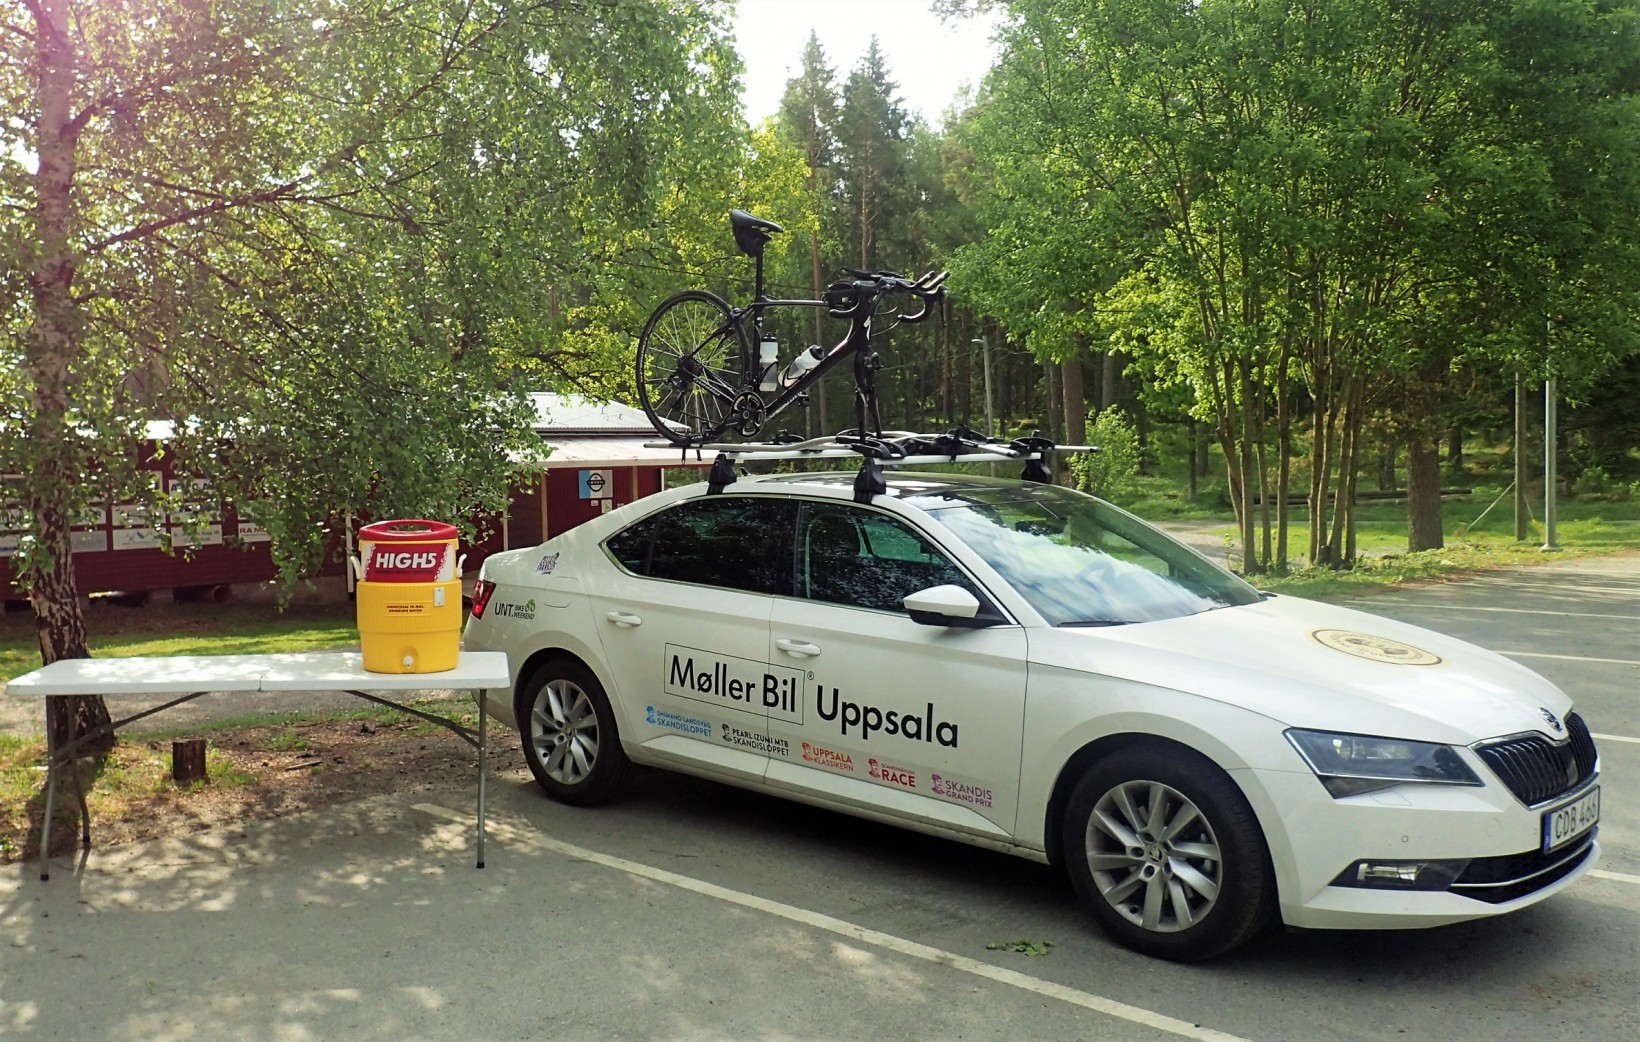 Jag kör UNT Bike Weekends fina bil från Skoda/Möller bil under ett par veckor till några olika motionslopp, och samtidigt passar vi på att bjuda alla cyklister på sportdryck från High5! 